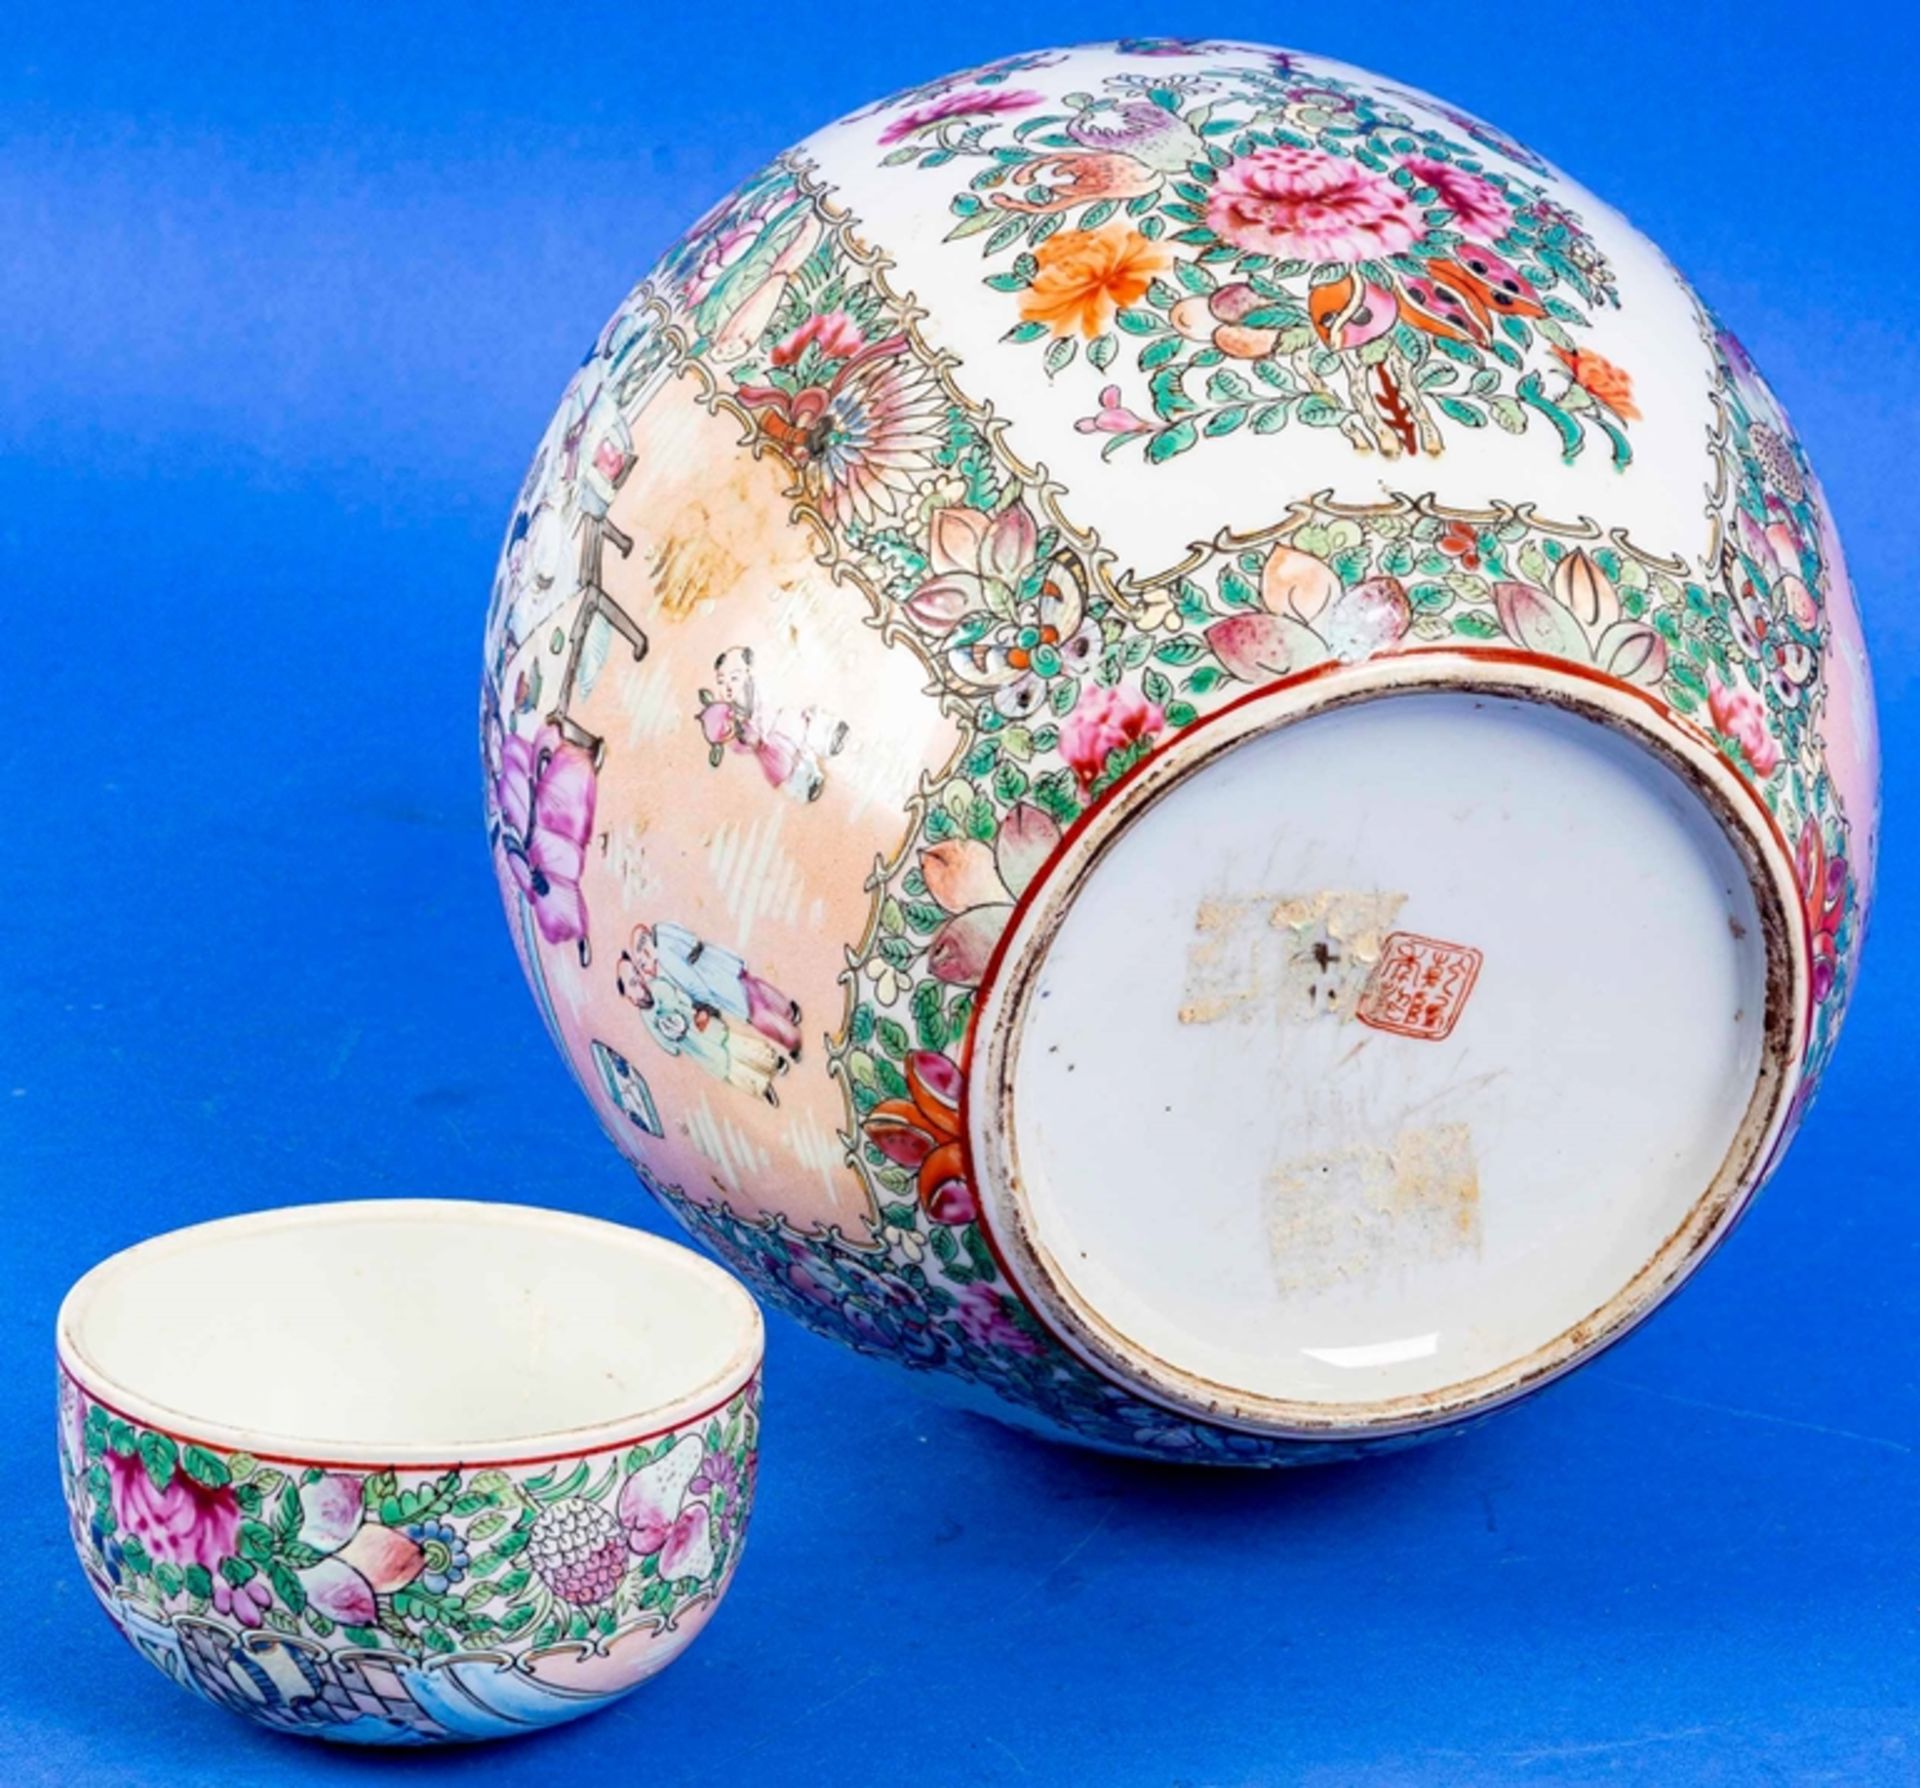 Großer Ingwer Jar, China 20. Jhdt., weißes Porzellan mit aufwändiger Kanton-Emaille-Malerei, Schrif - Bild 7 aus 12